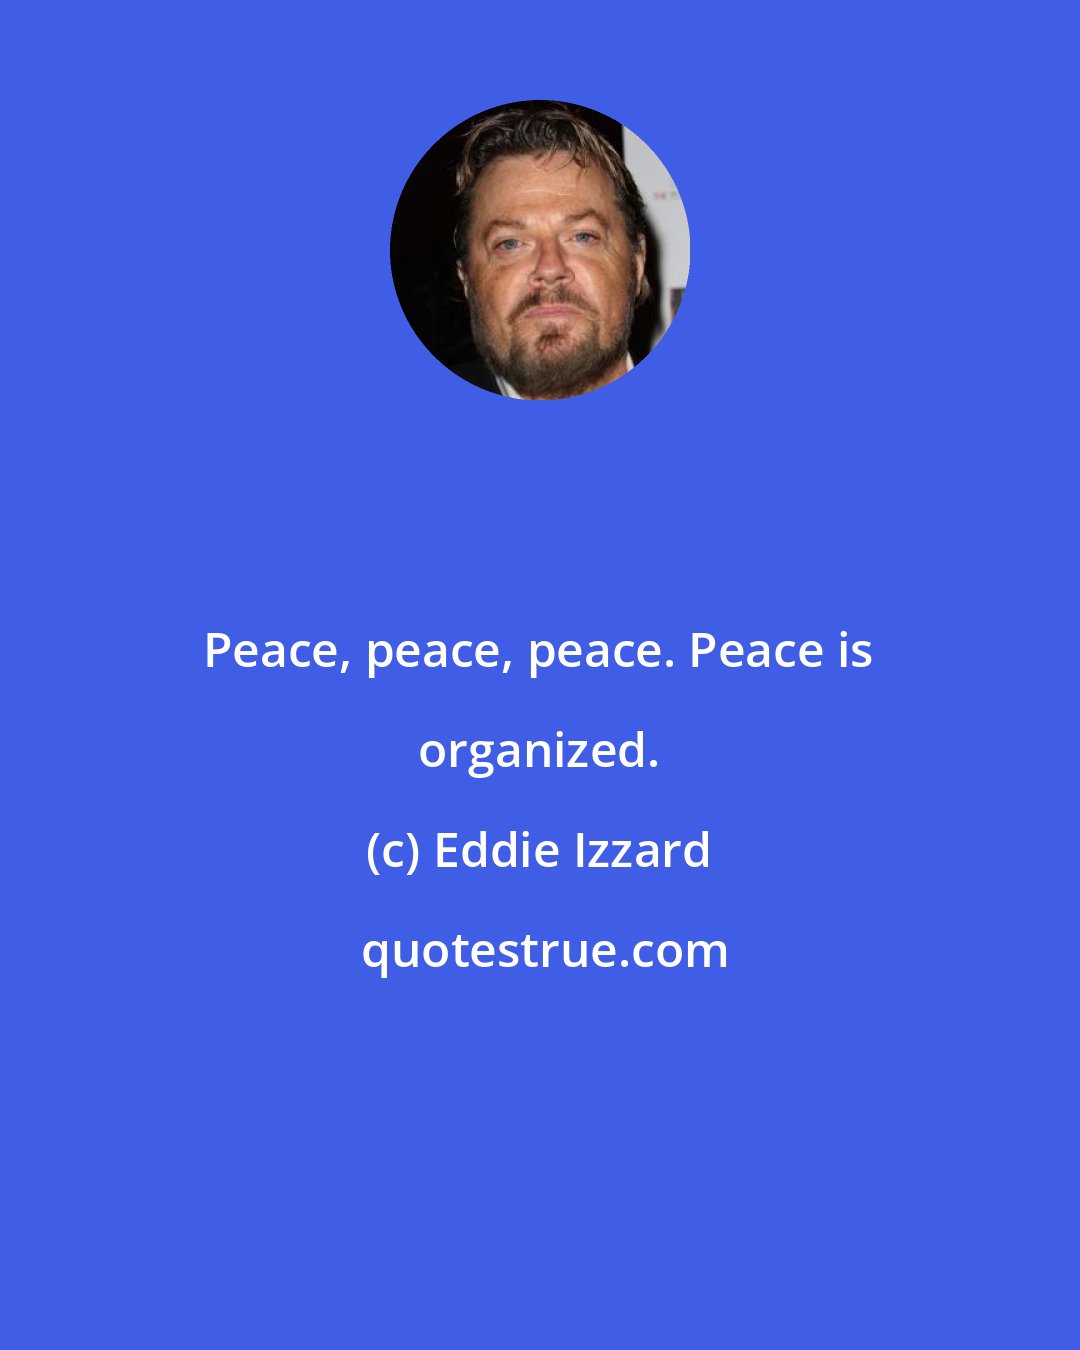 Eddie Izzard: Peace, peace, peace. Peace is organized.